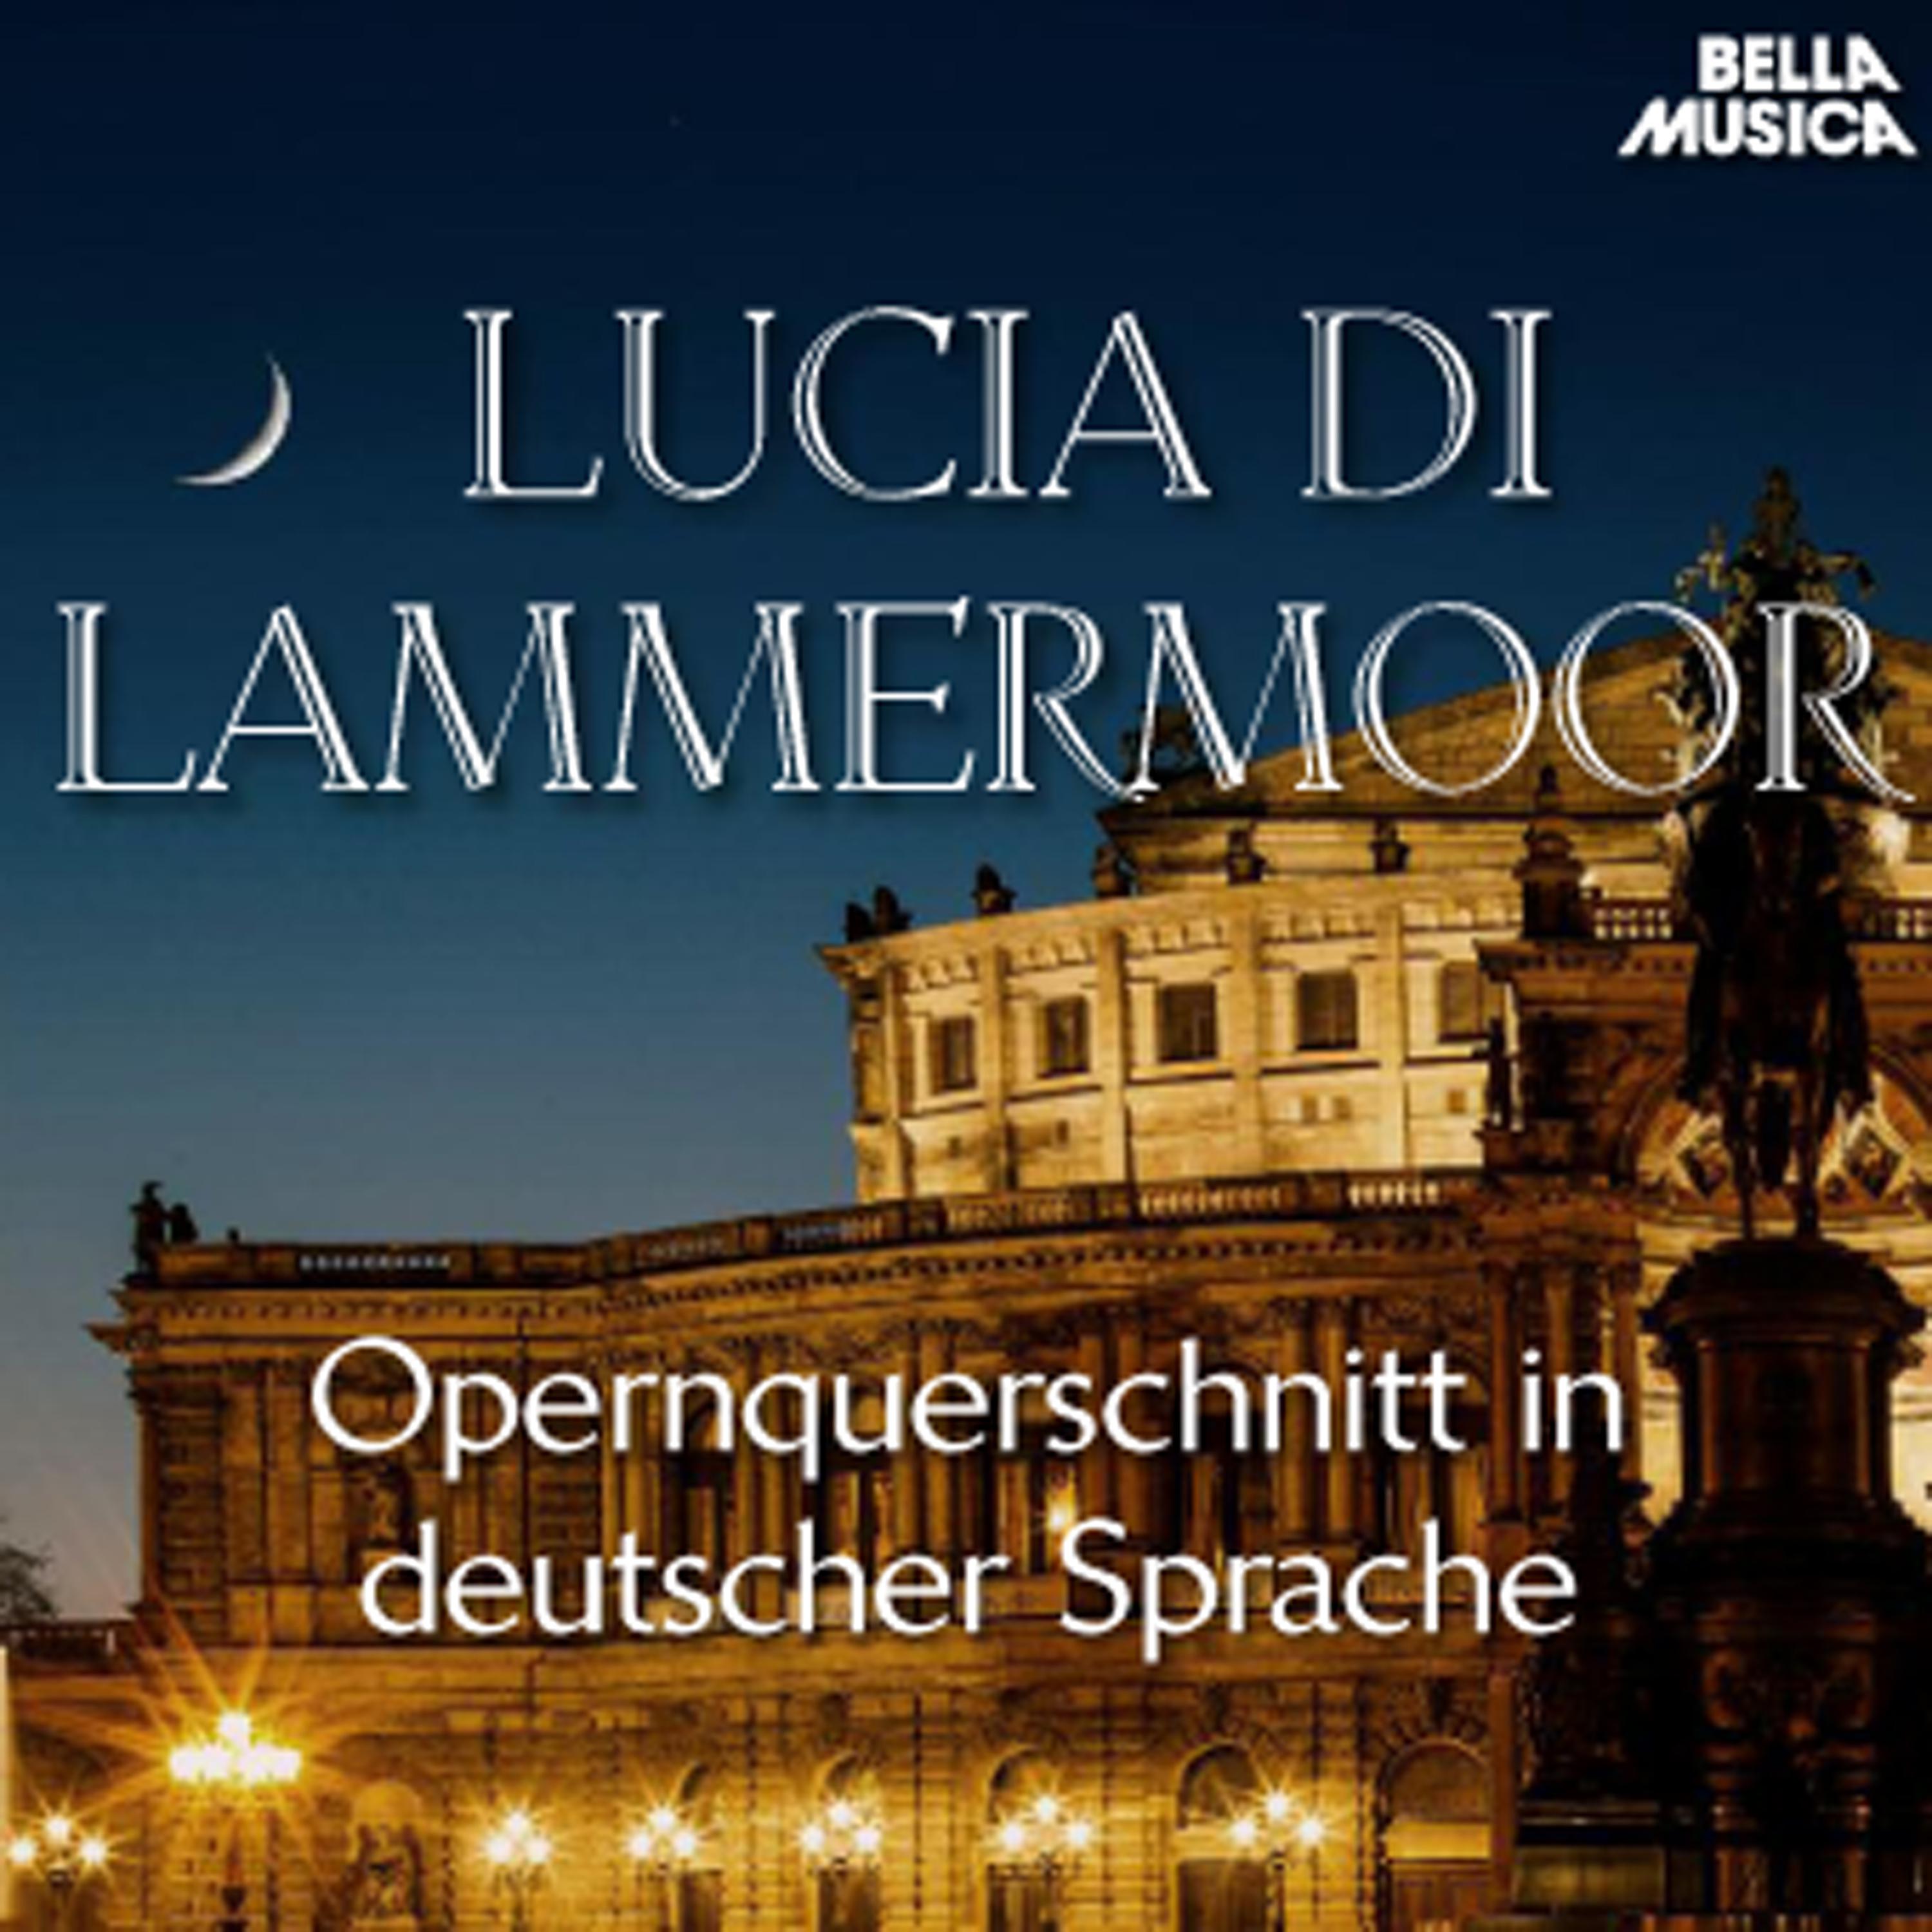 Lucia di Lammermoor: Um die Verm hlung heut' zu feiern  Tritt n her, Lucia  In Jammer und Tr nen